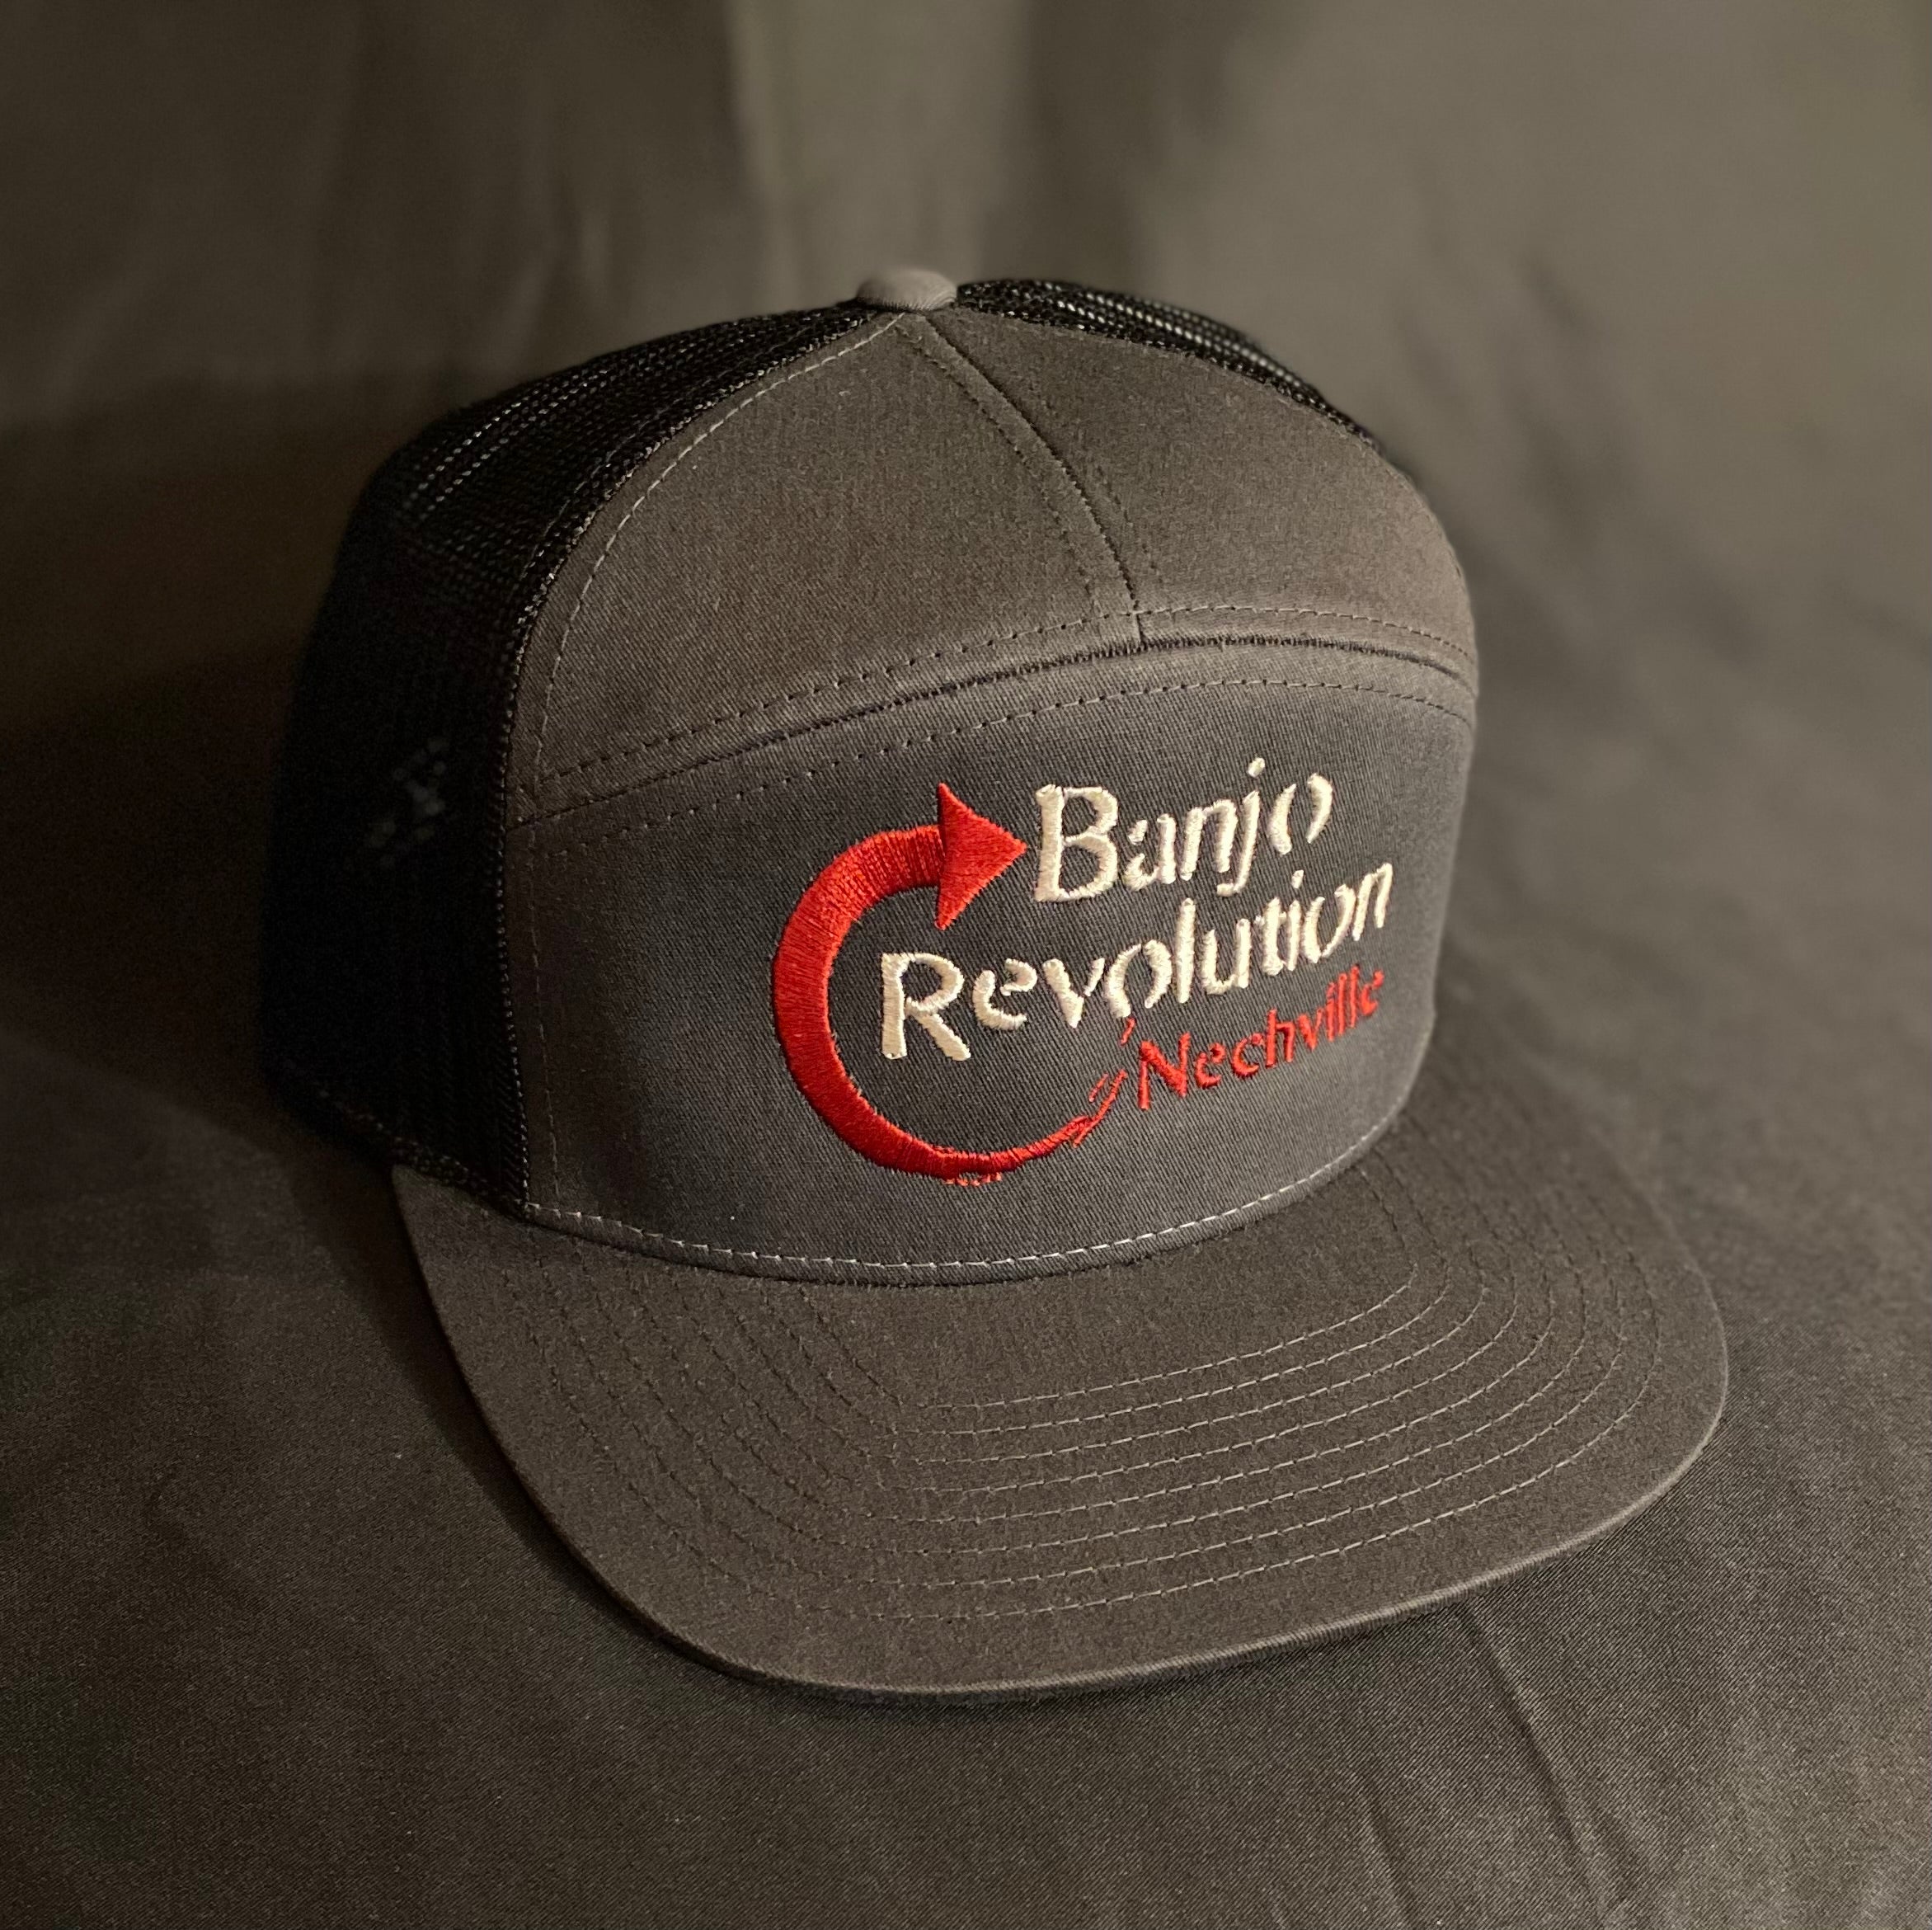 Nechville Trucker Hat